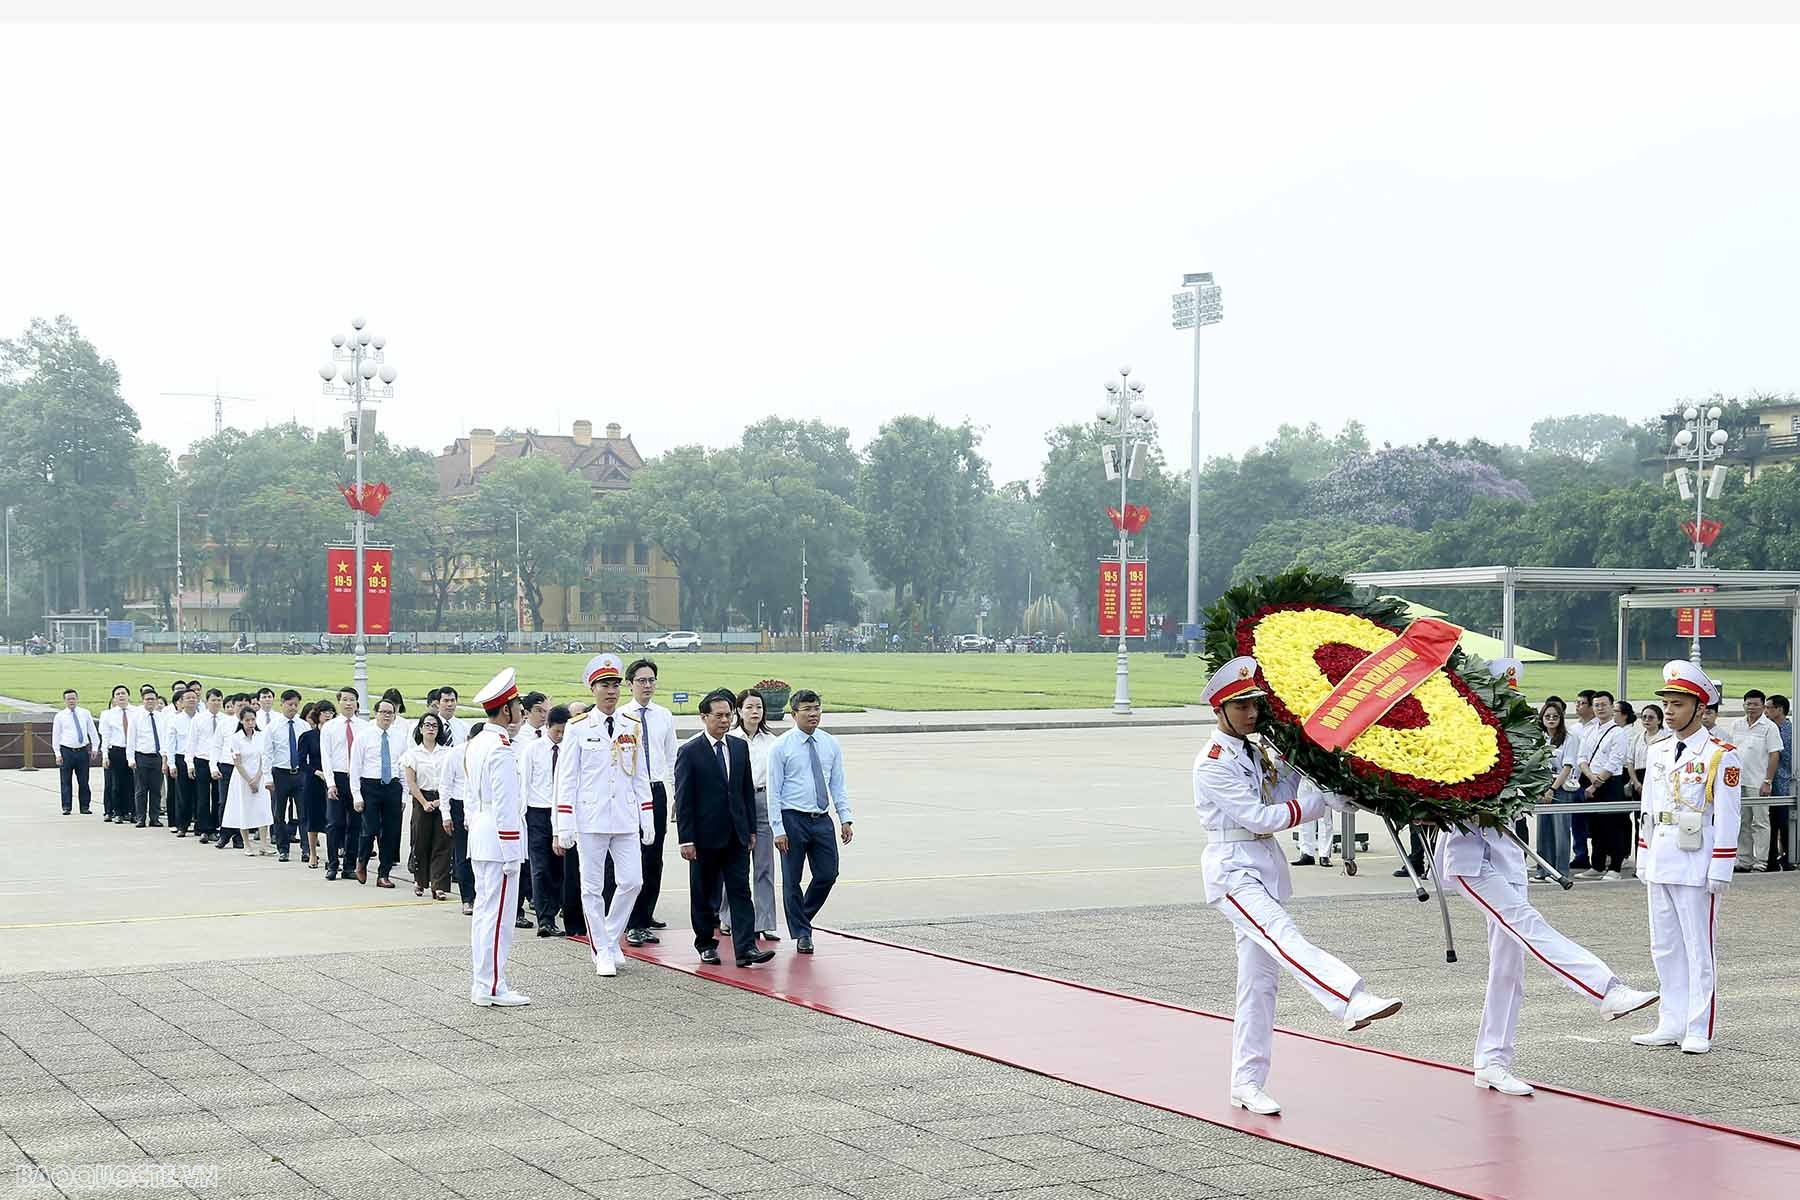 Đoàn Bộ Ngoại giao vào Lăng viếng Bác nhân kỷ niệm 134 năm Ngày sinh Chủ tịch Hồ Chí Minh